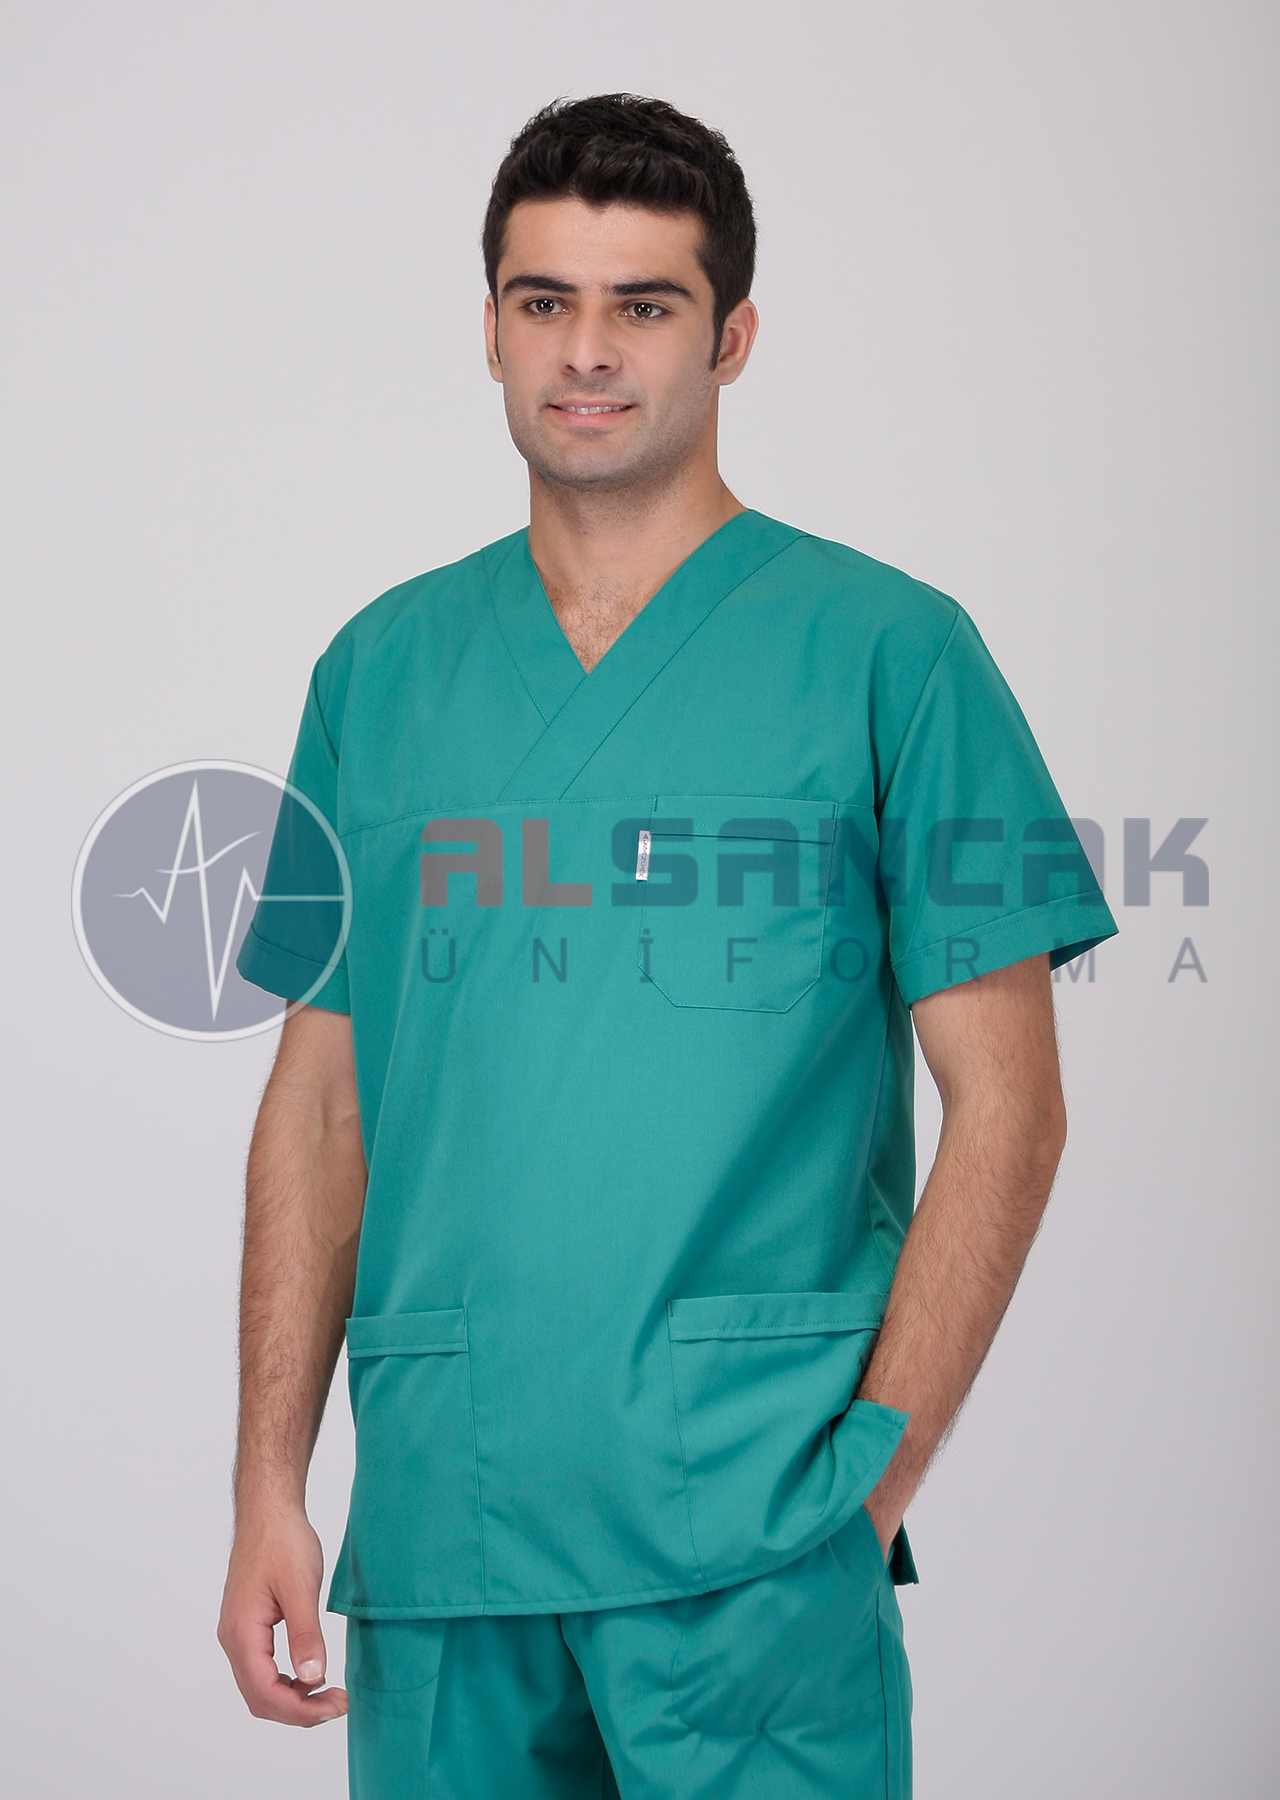 (Outlet) Erkek Basic V Yaka Cerrahi Yeşil Doktor Forması Takımı